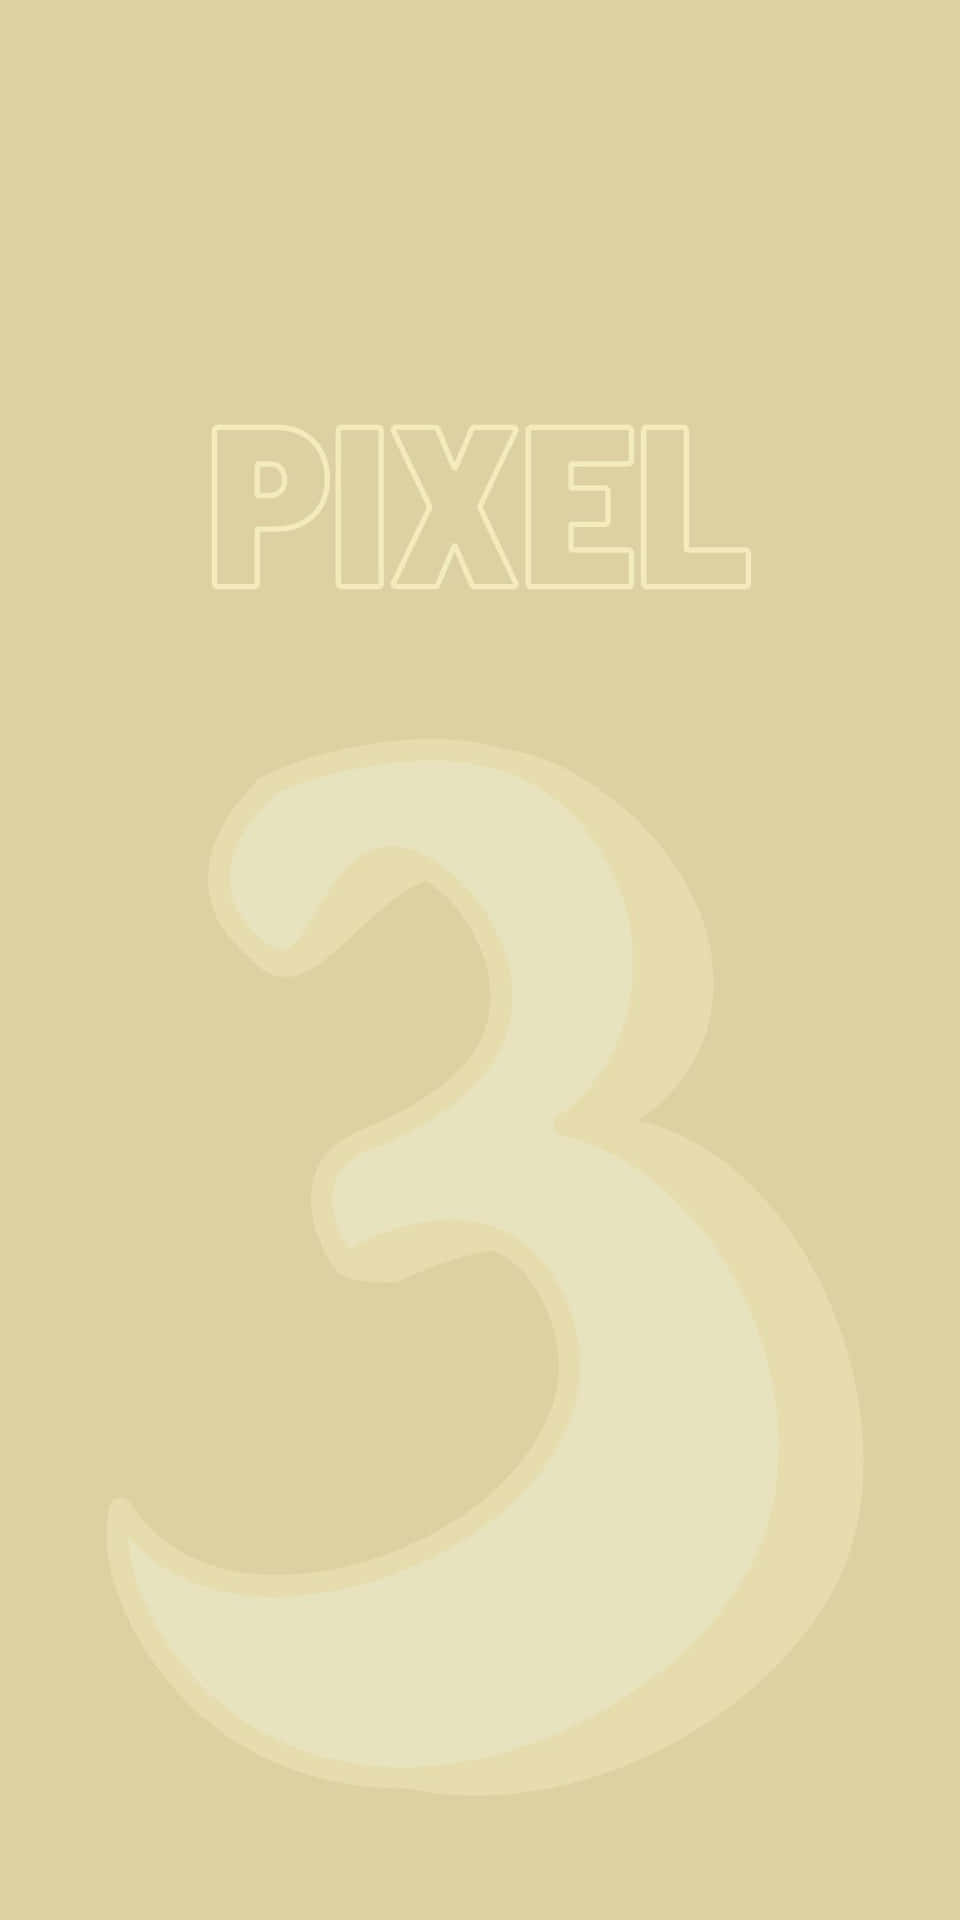 Download Pixel 3 Xl Black 3 Wallpaper | Wallpapers.com